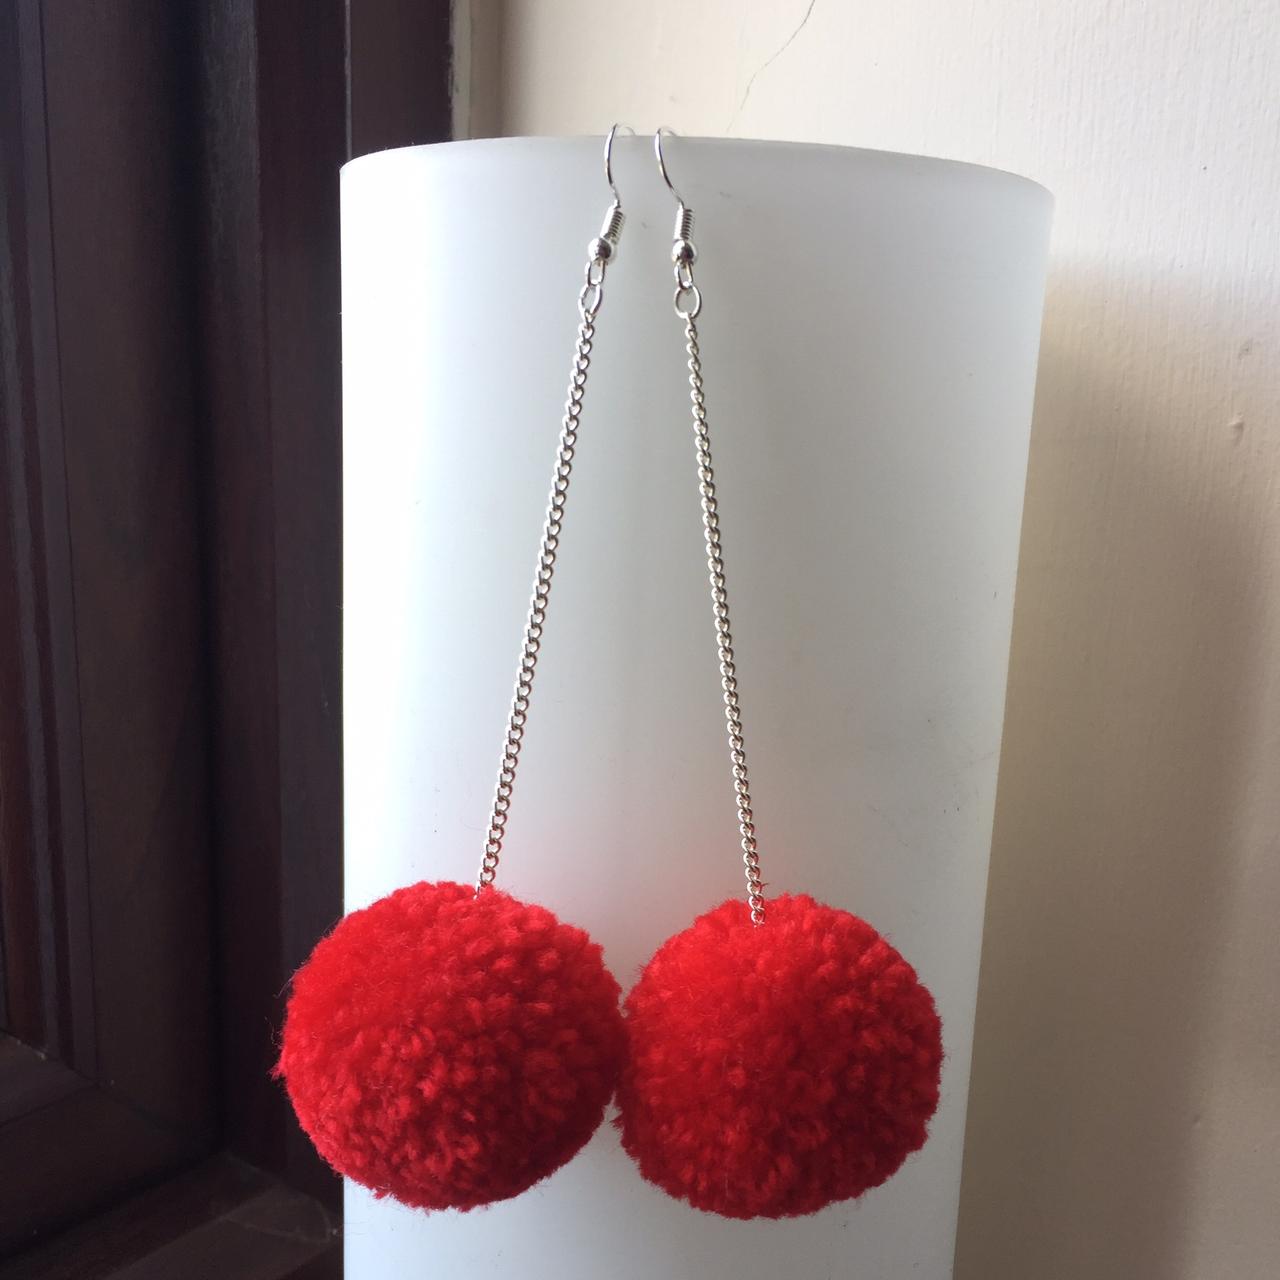 Red pom pom earrings - Folksy